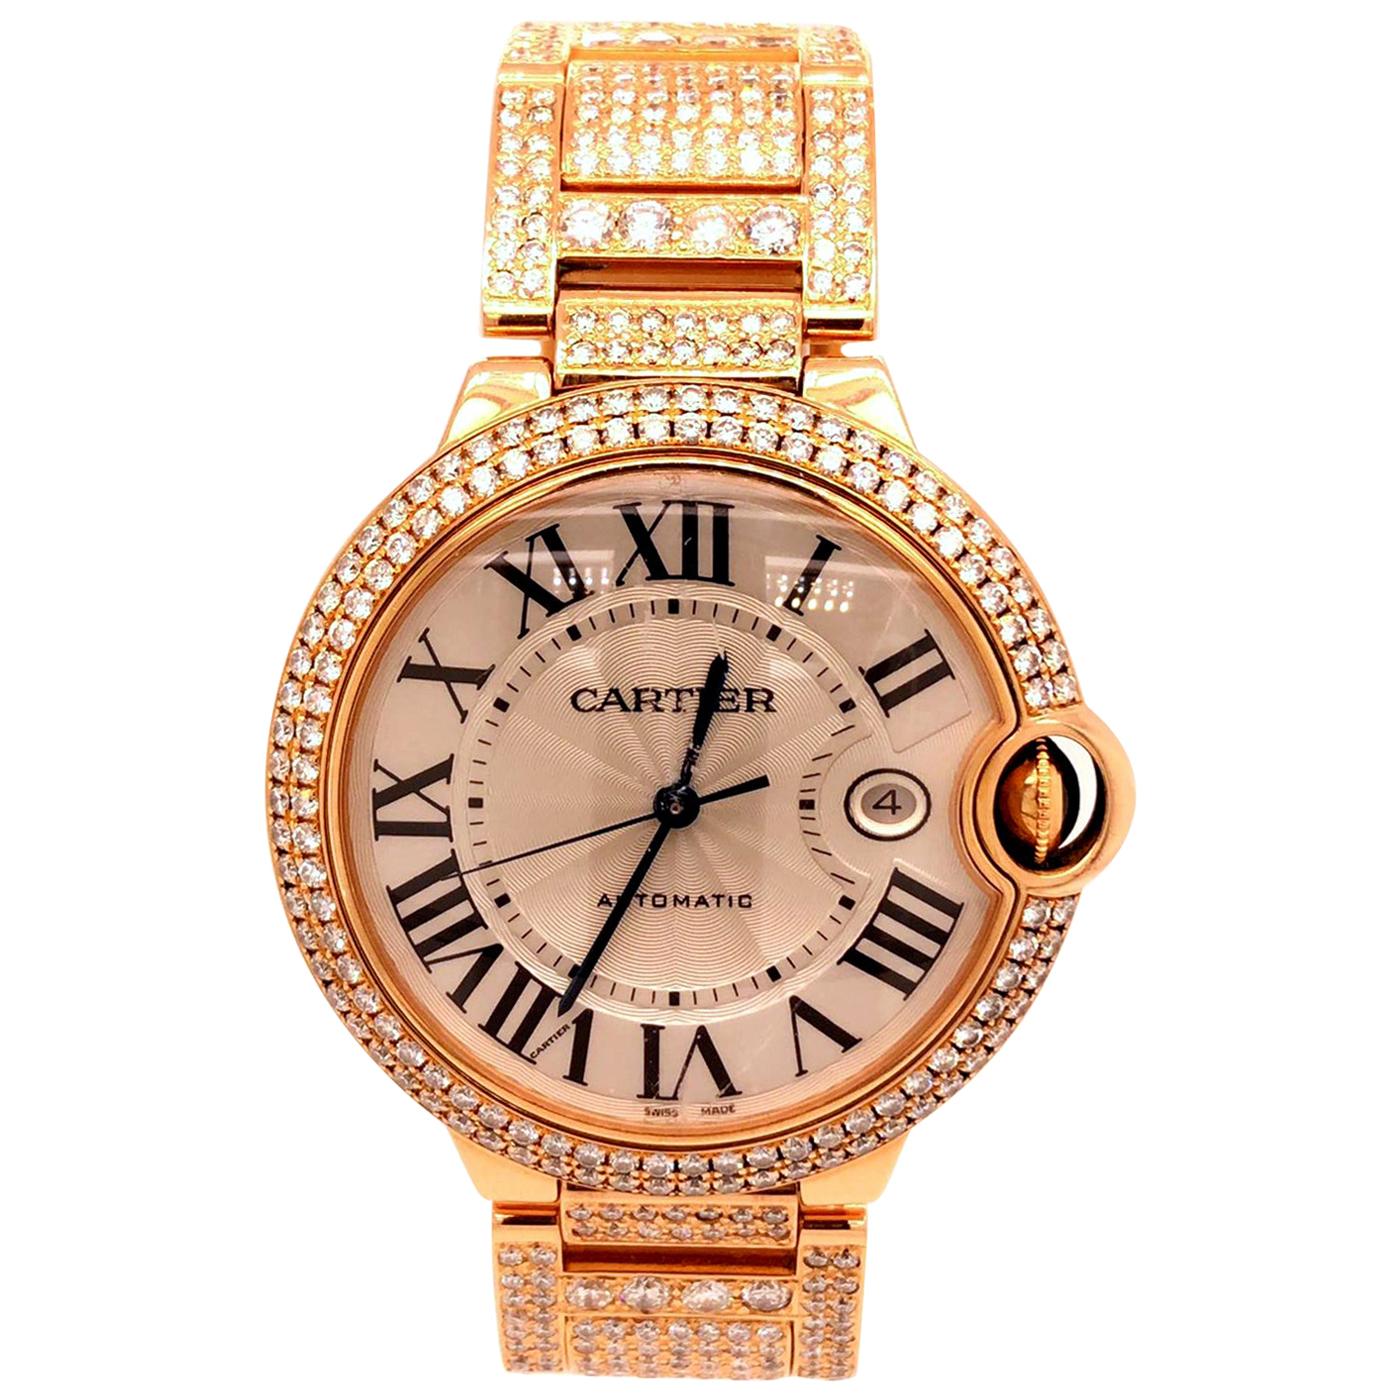 Cartier Ballon Bleu de Cartier 18K Rose Gold Automatic Movement Diamond Watch